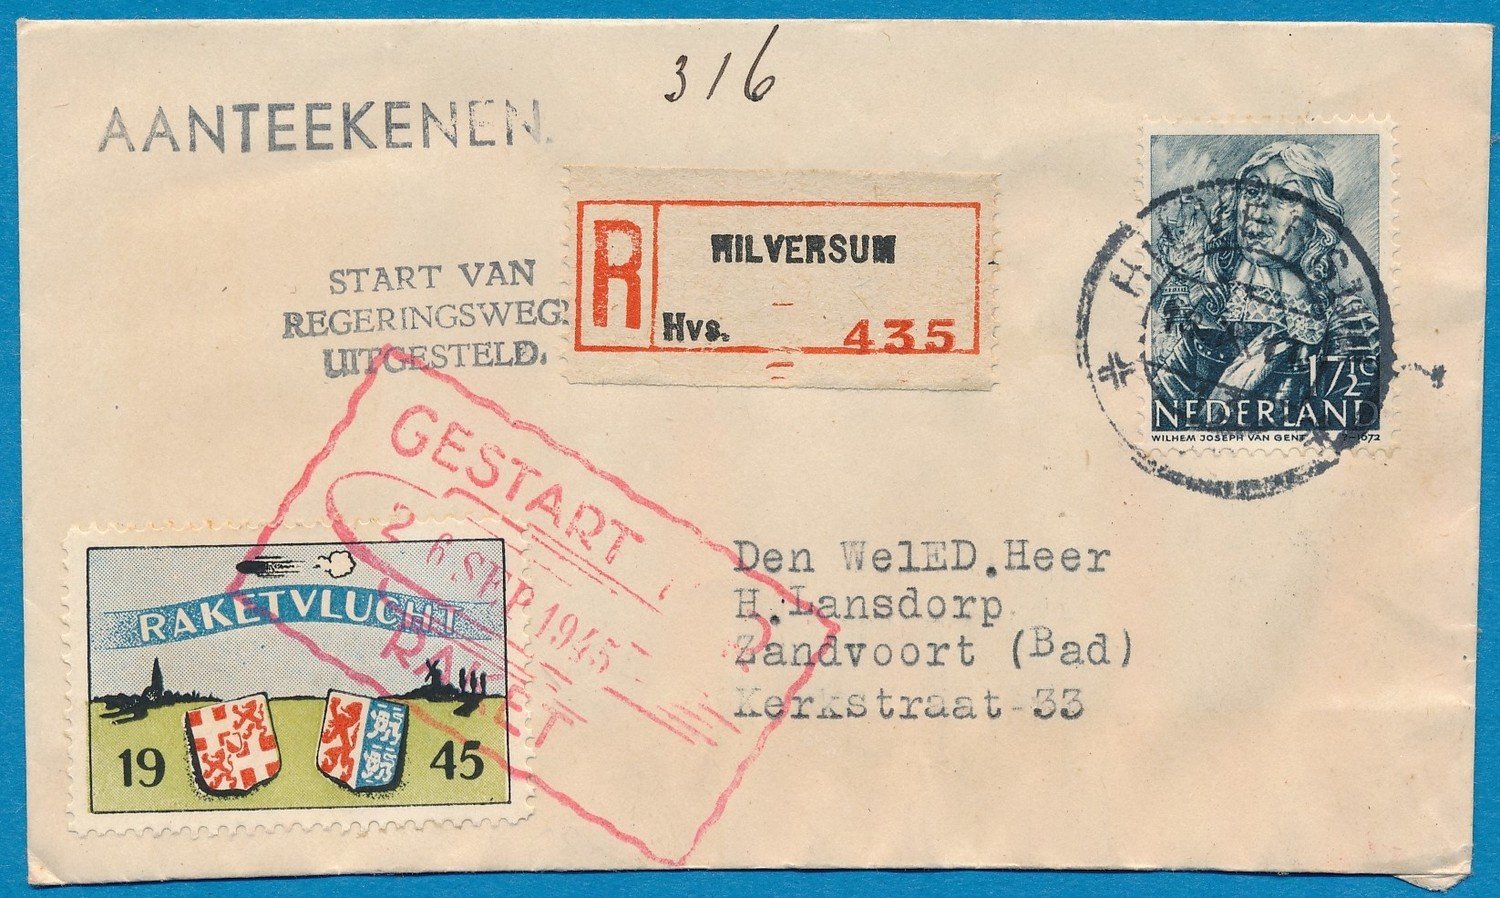 NEDERLAND R raket vlucht 1945 Hilversum